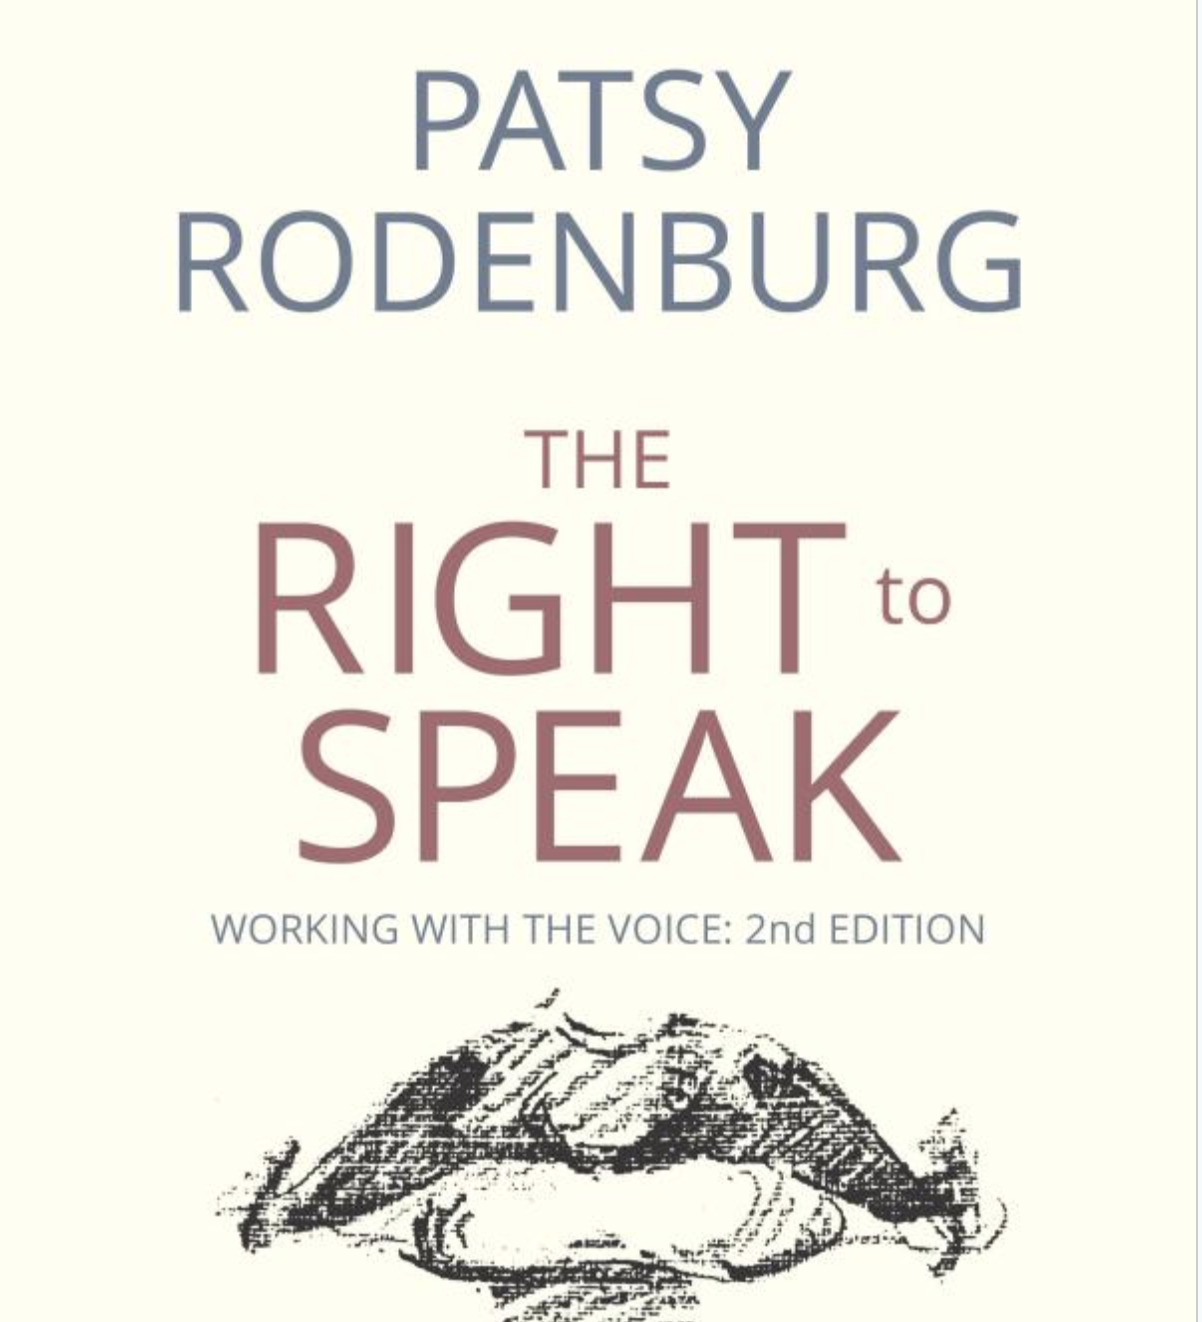 The Right To Speak - Patsy Rodenburg